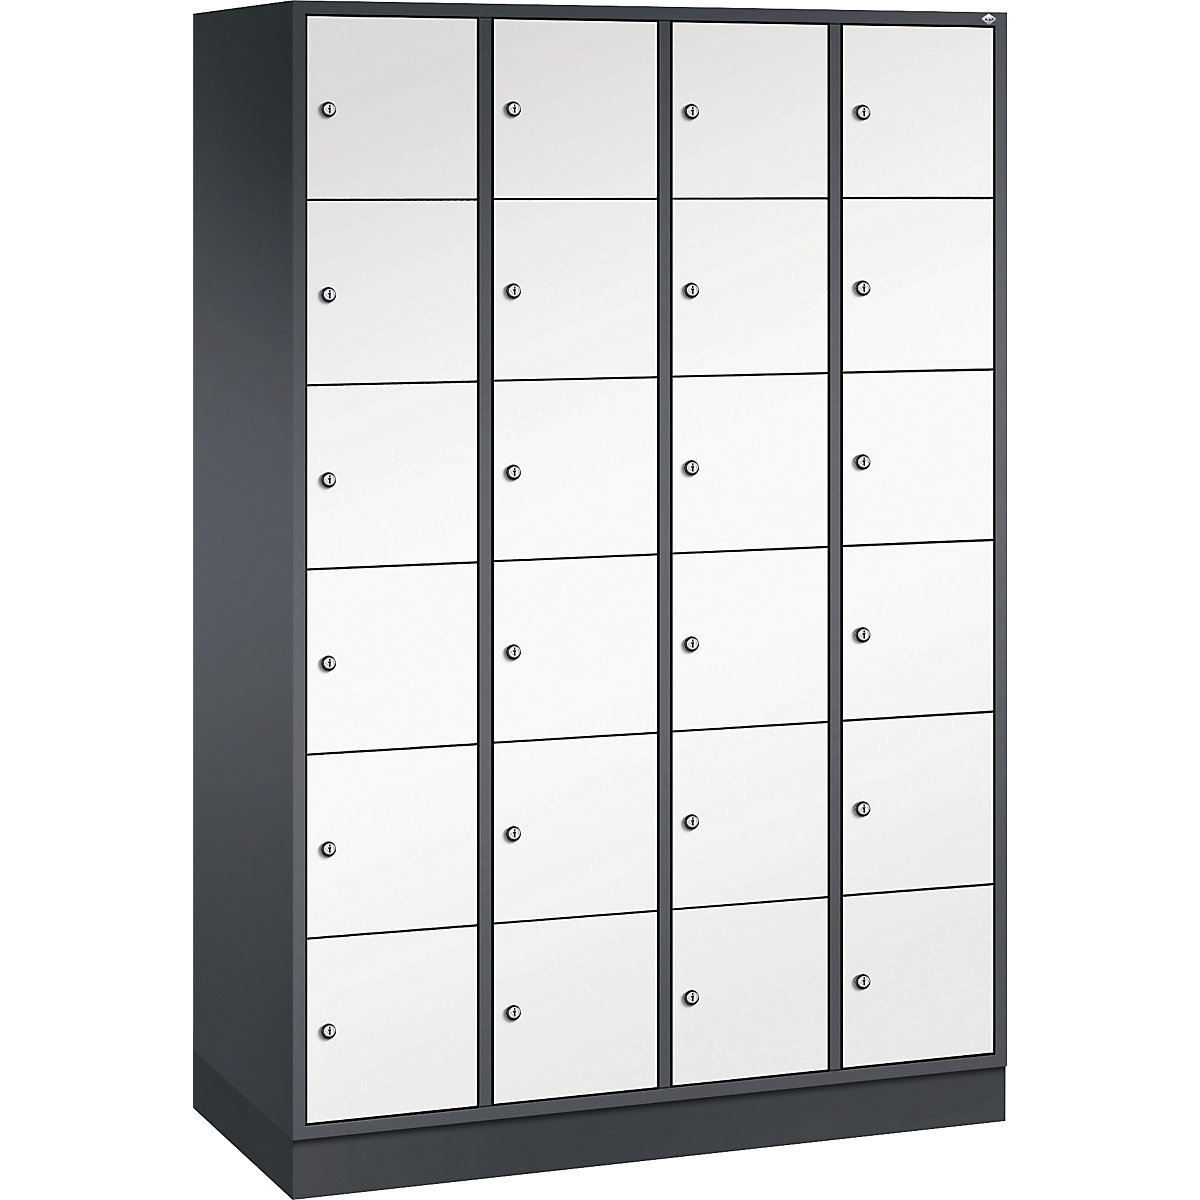 Vestiaire multicases en acier INTRO, casiers hauteur 285 mm – C+P, l x p 1220 x 500 mm, 24 casiers, corps gris noir, portes blanc pur-7